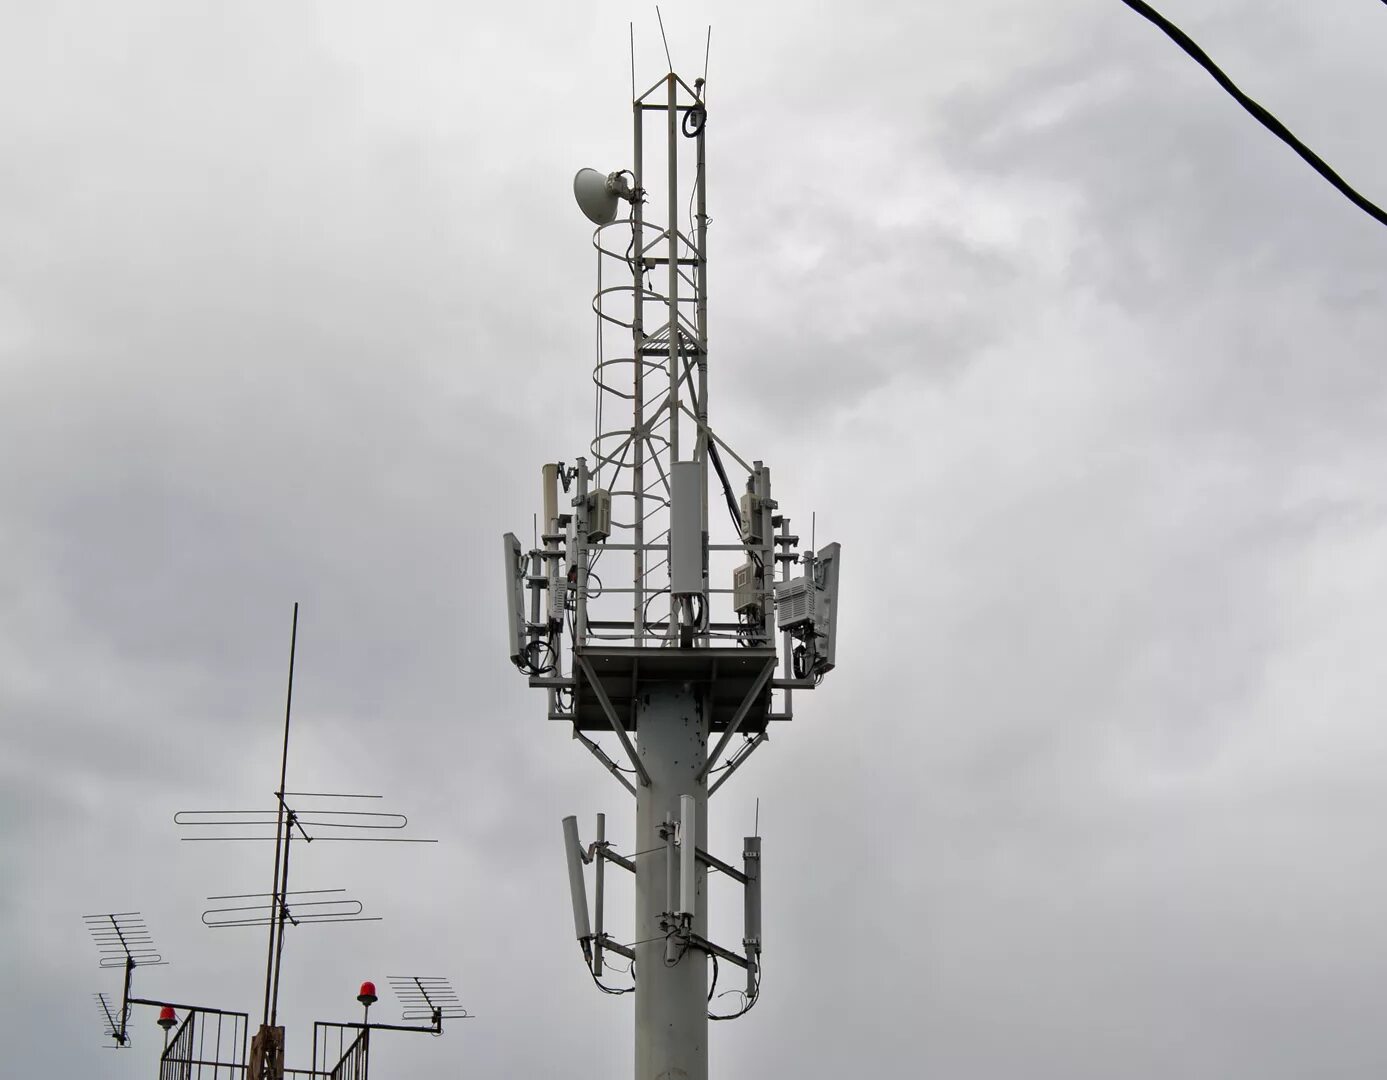 Базовая станция 4g LTE. Базовая станция сотовой связи LTE. Базовые станции сотовой связи стандарта 4g/LTE. Антенна базовой станции 4g LTE.